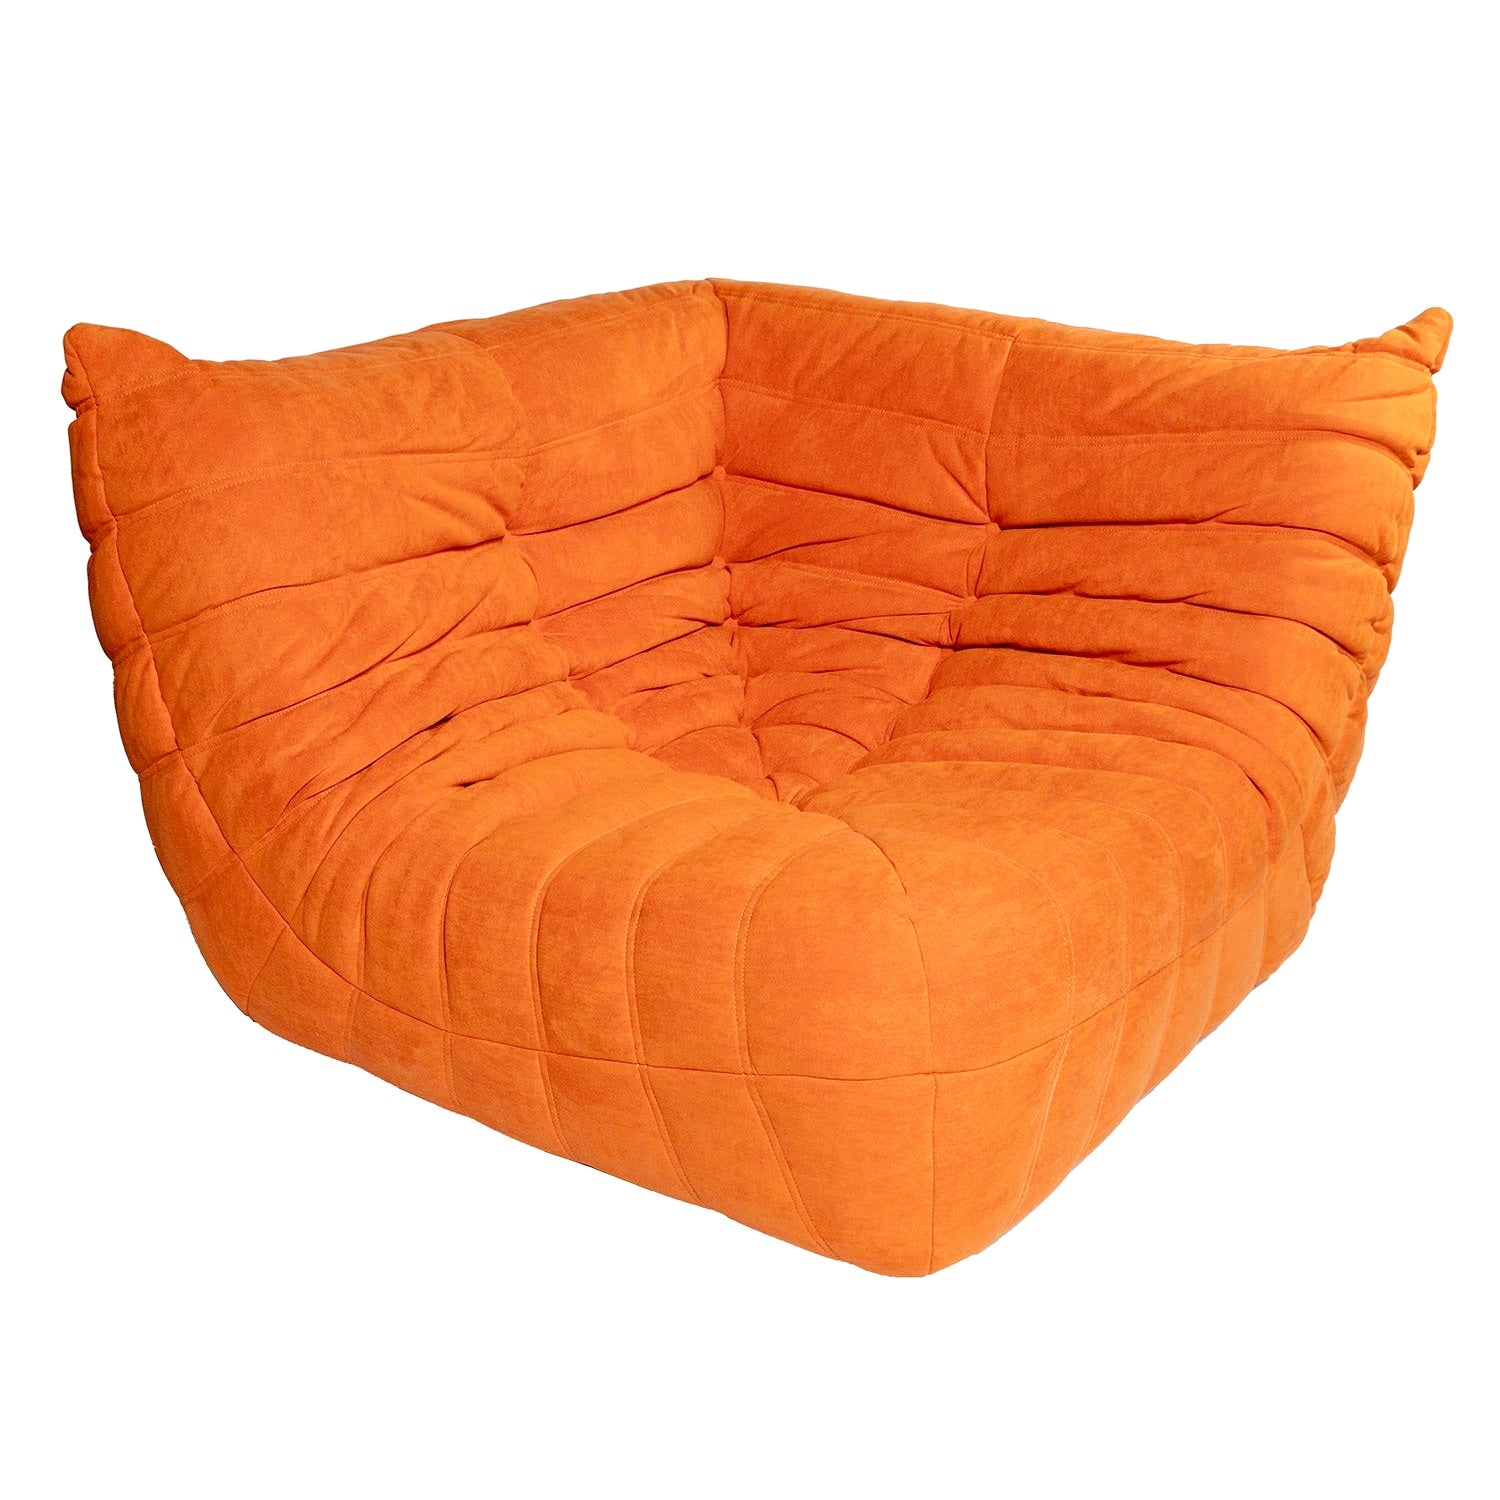 Togo Style Sofa Orange Suede Corner